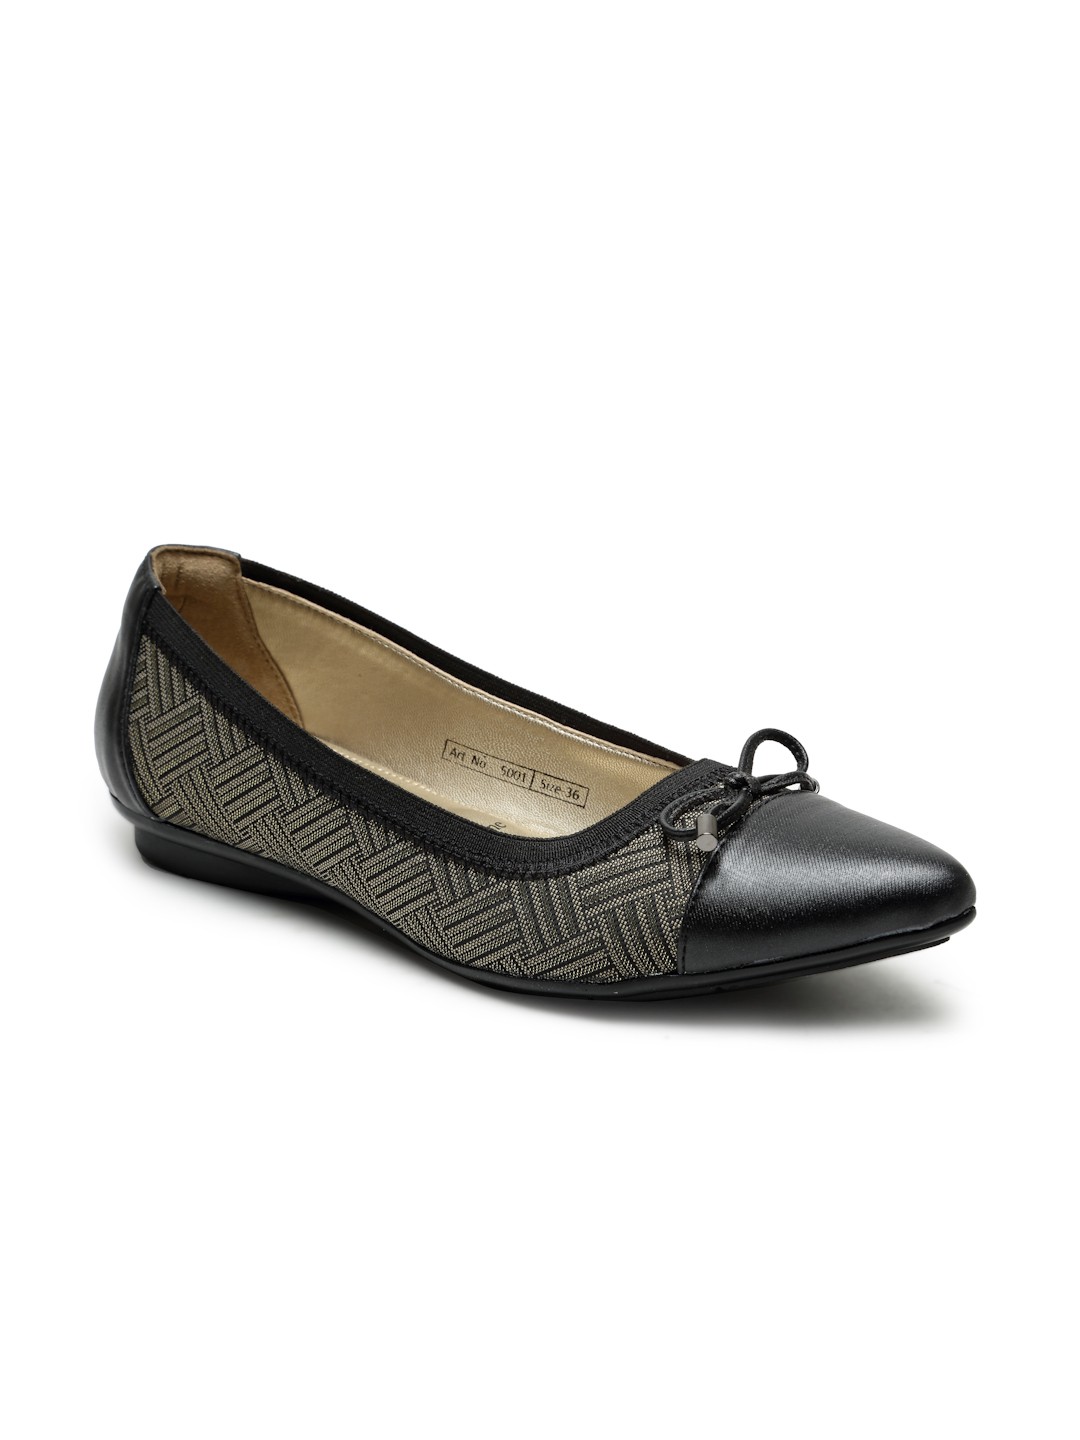 Buy Von Wellx Germany Comfort Women's Black Casual Shoes Lisa Online in Vadodara